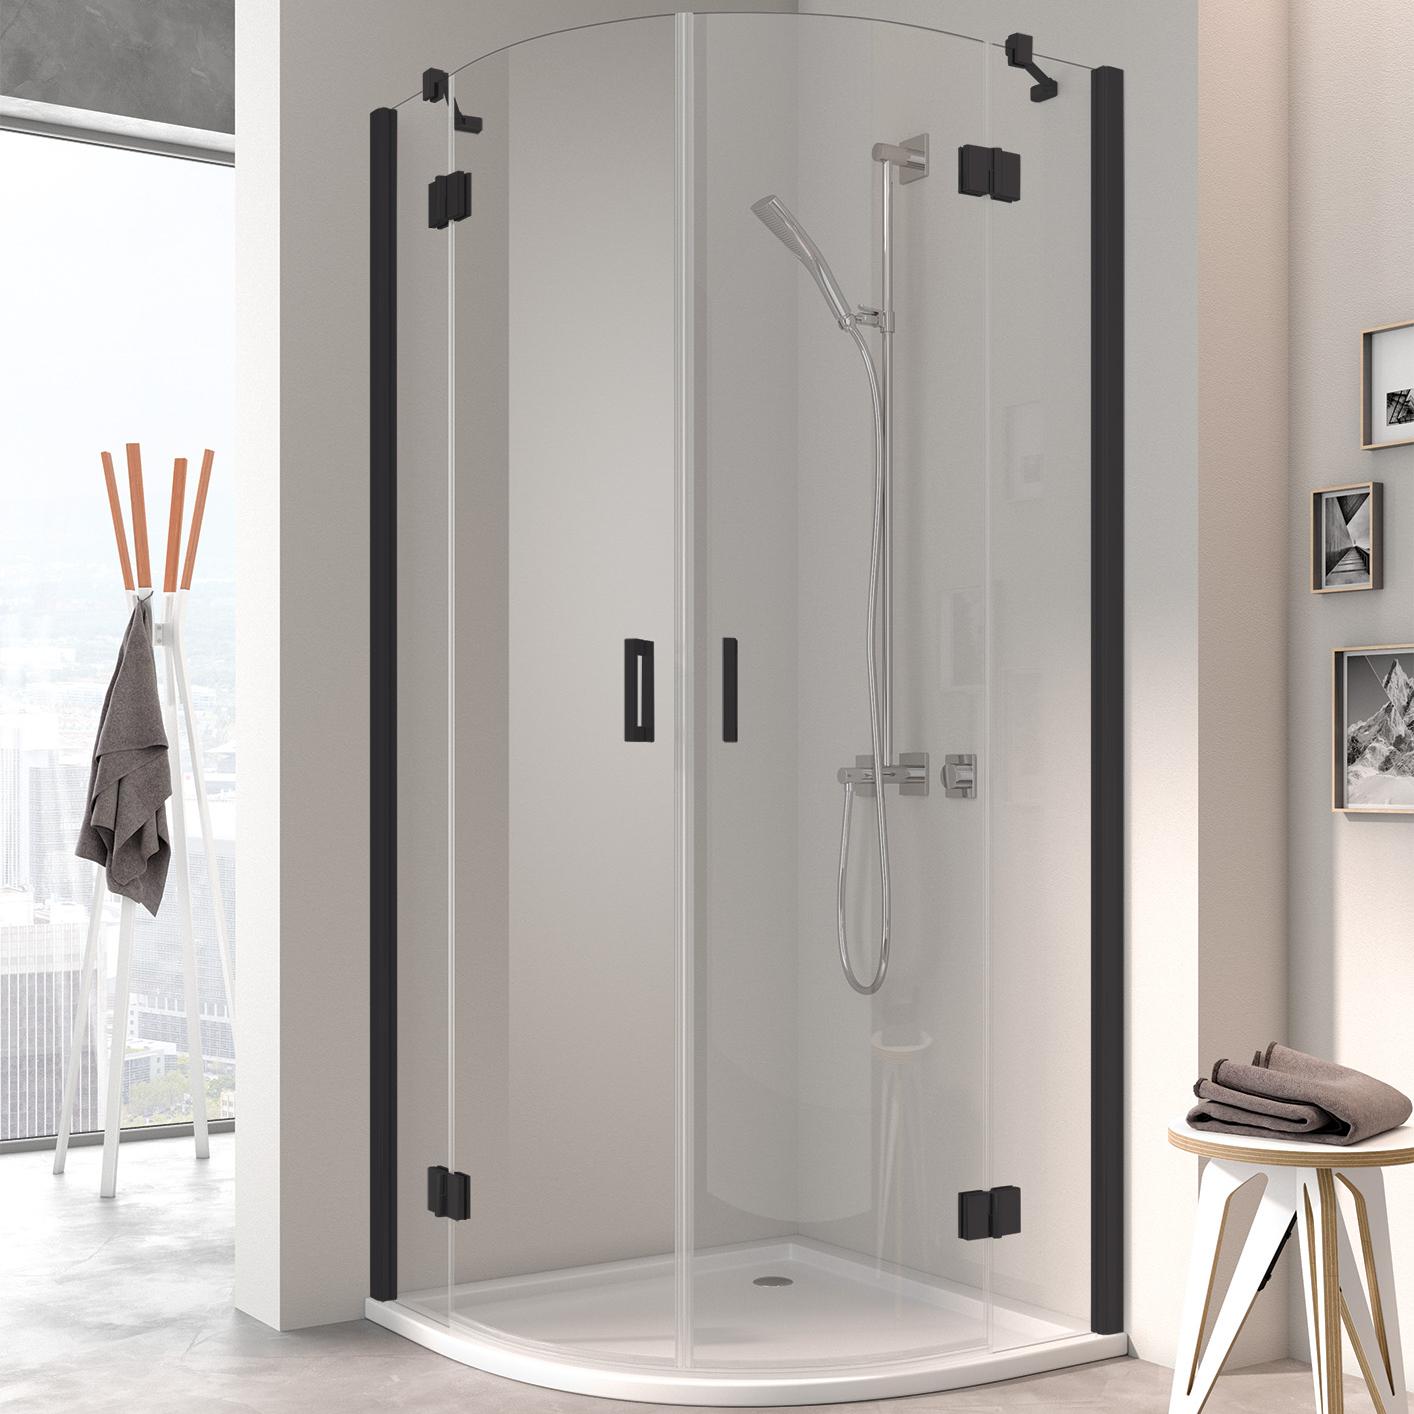 Zawiasowa kabina prysznicowa Kermi OSIA, kabina ćwierćkolista (drzwi skrzydłowe z polami stałymi), czarna